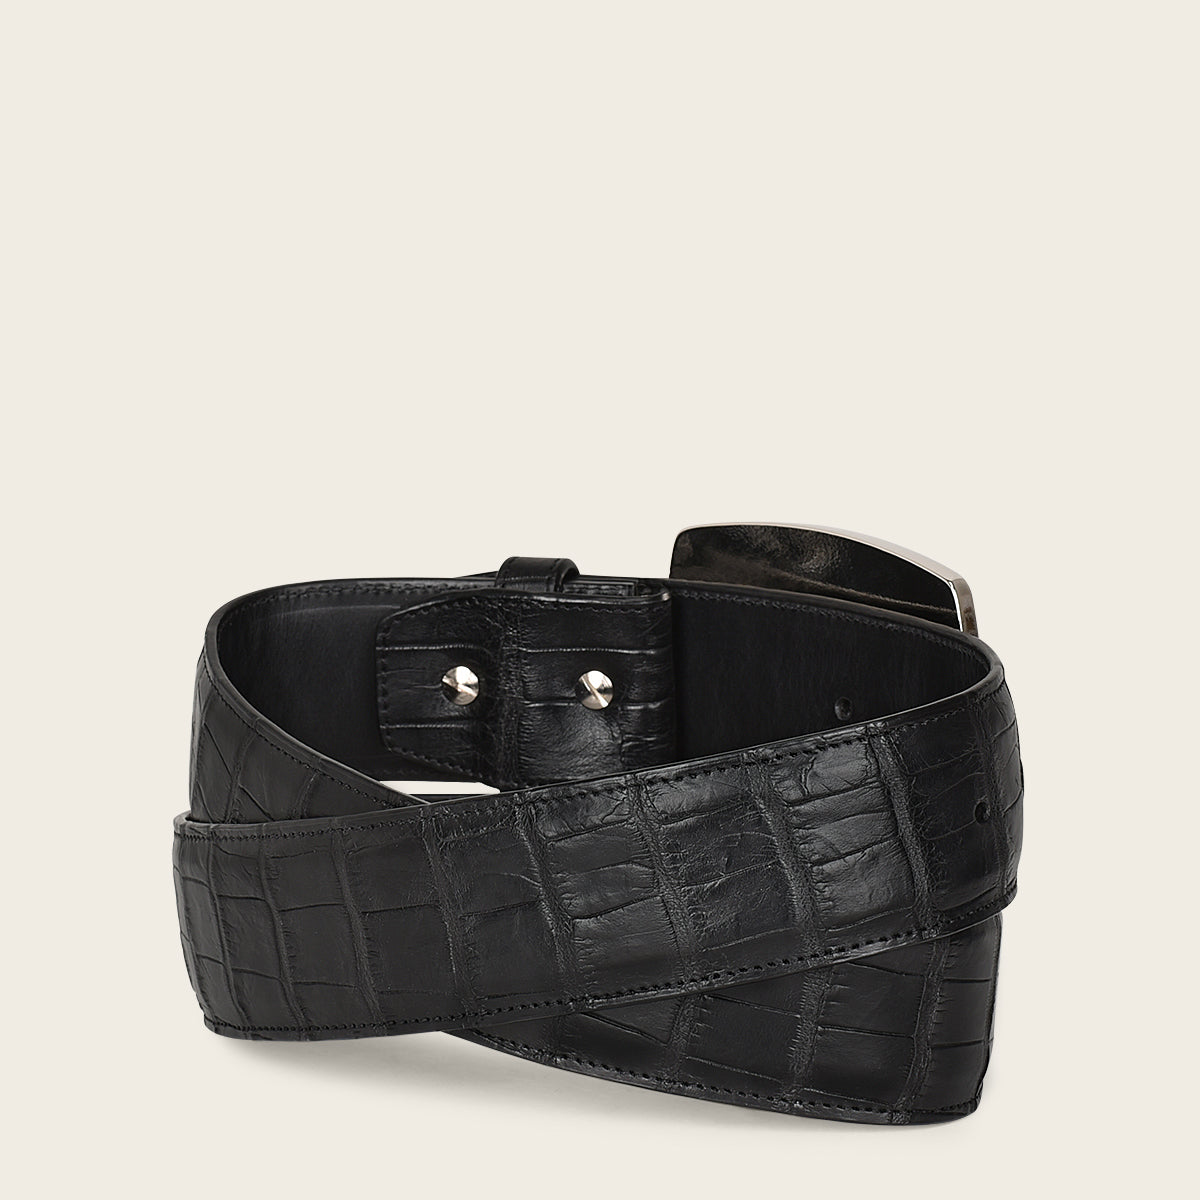 Cinturón tradicional de piel alto color negro